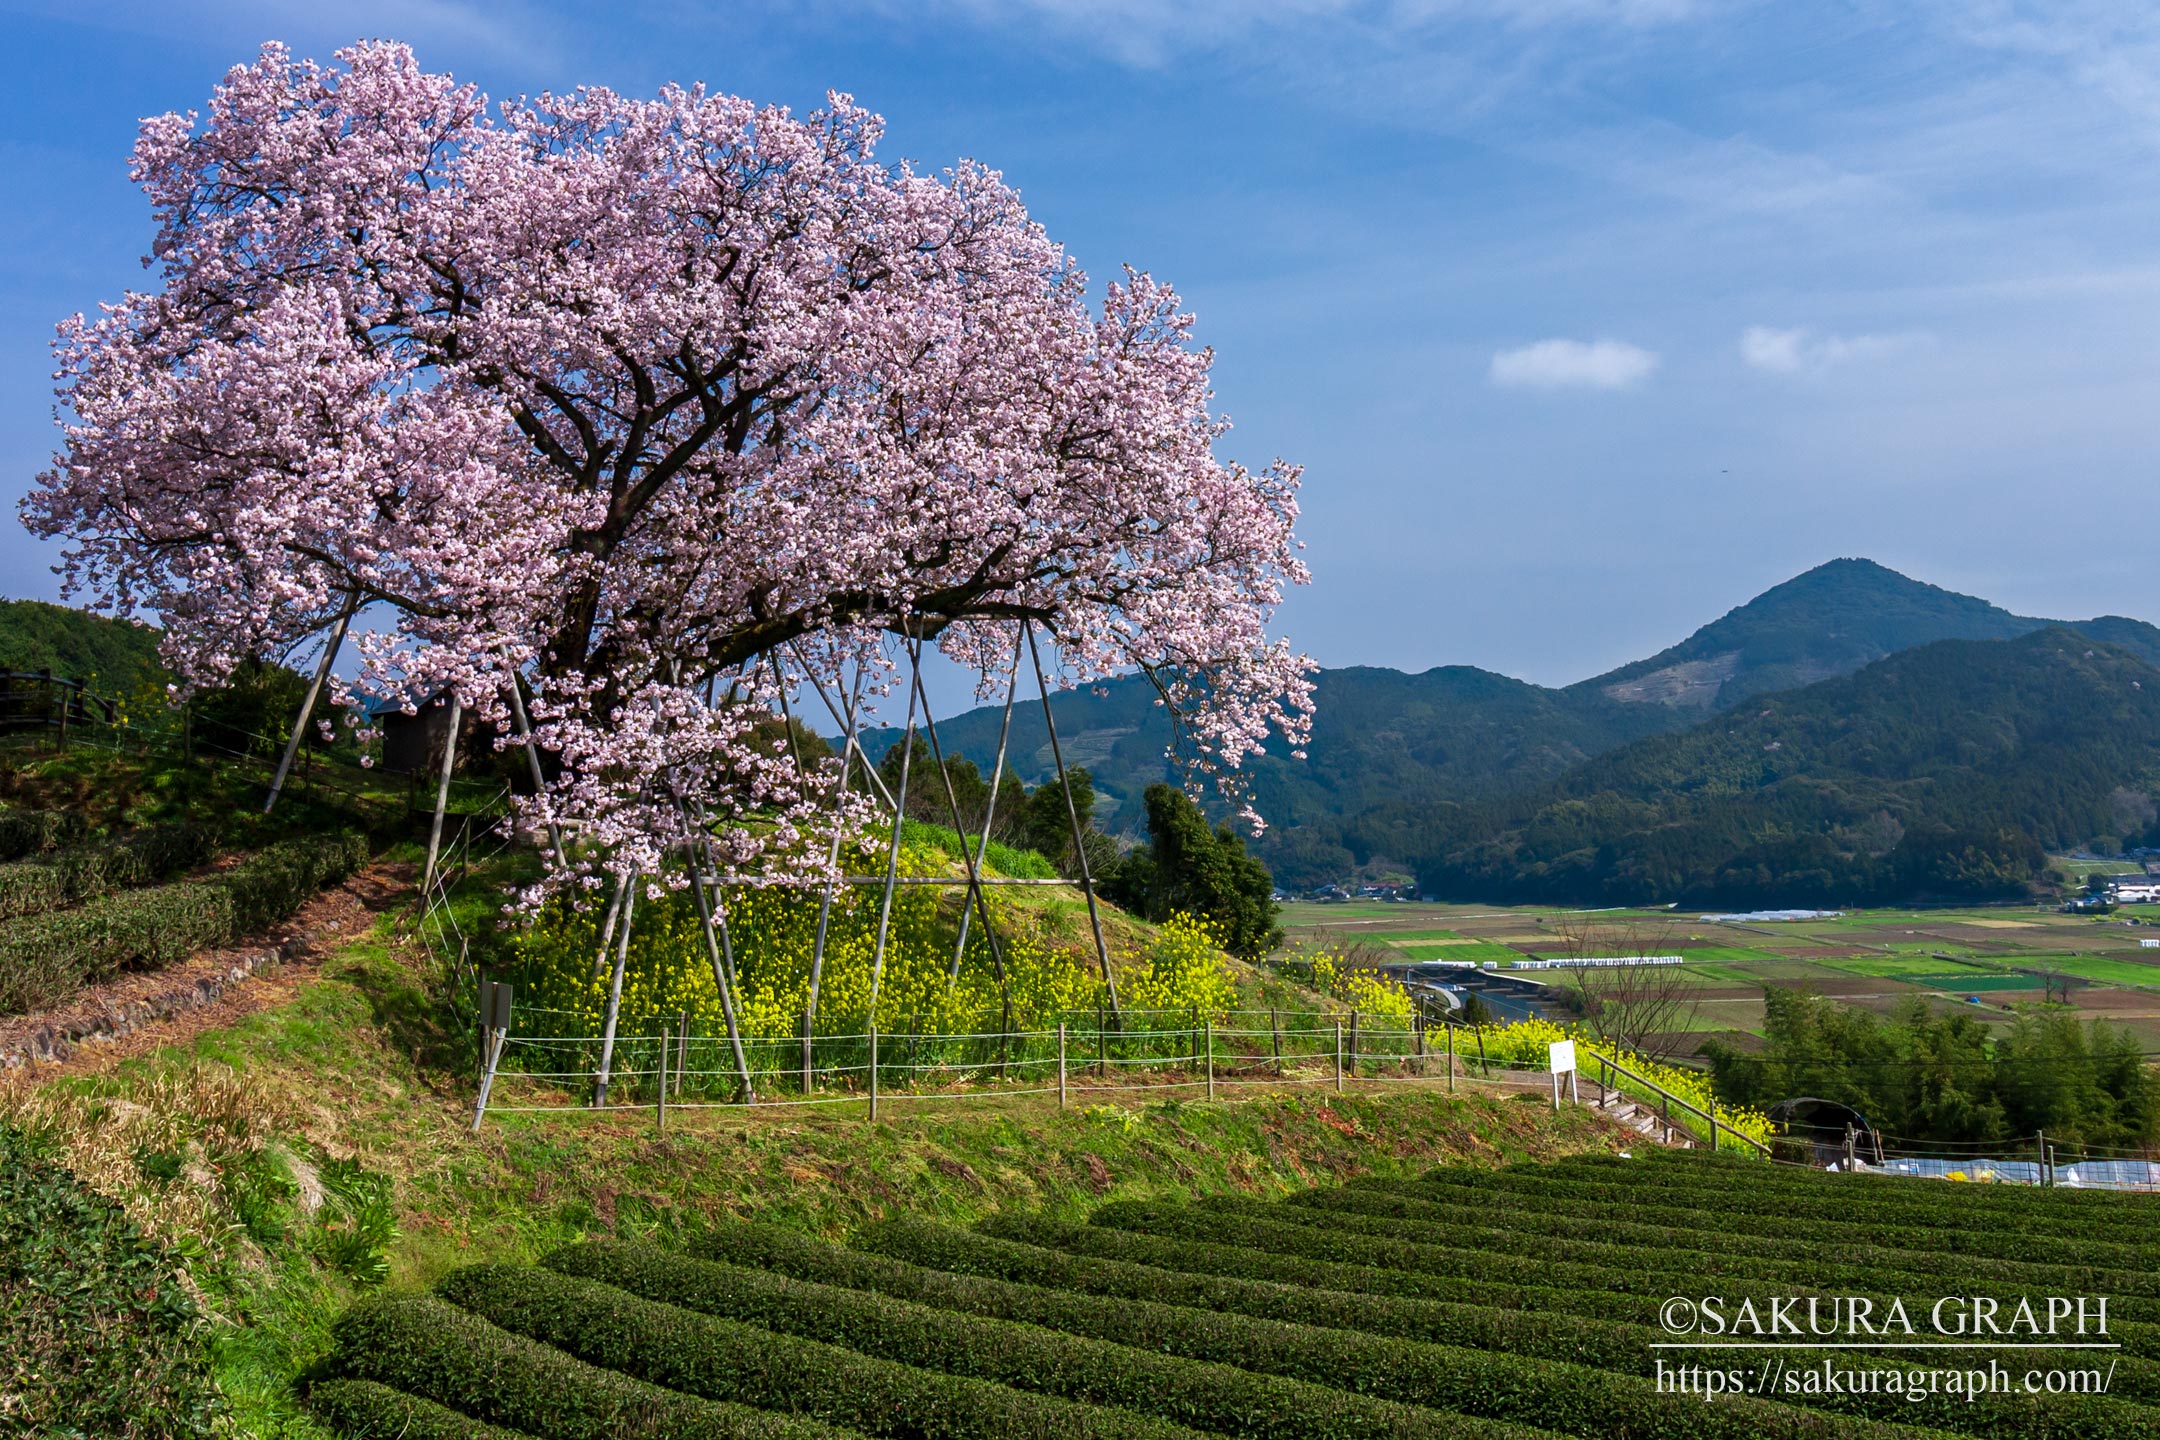 納戸料の百年桜 Sakuragraph